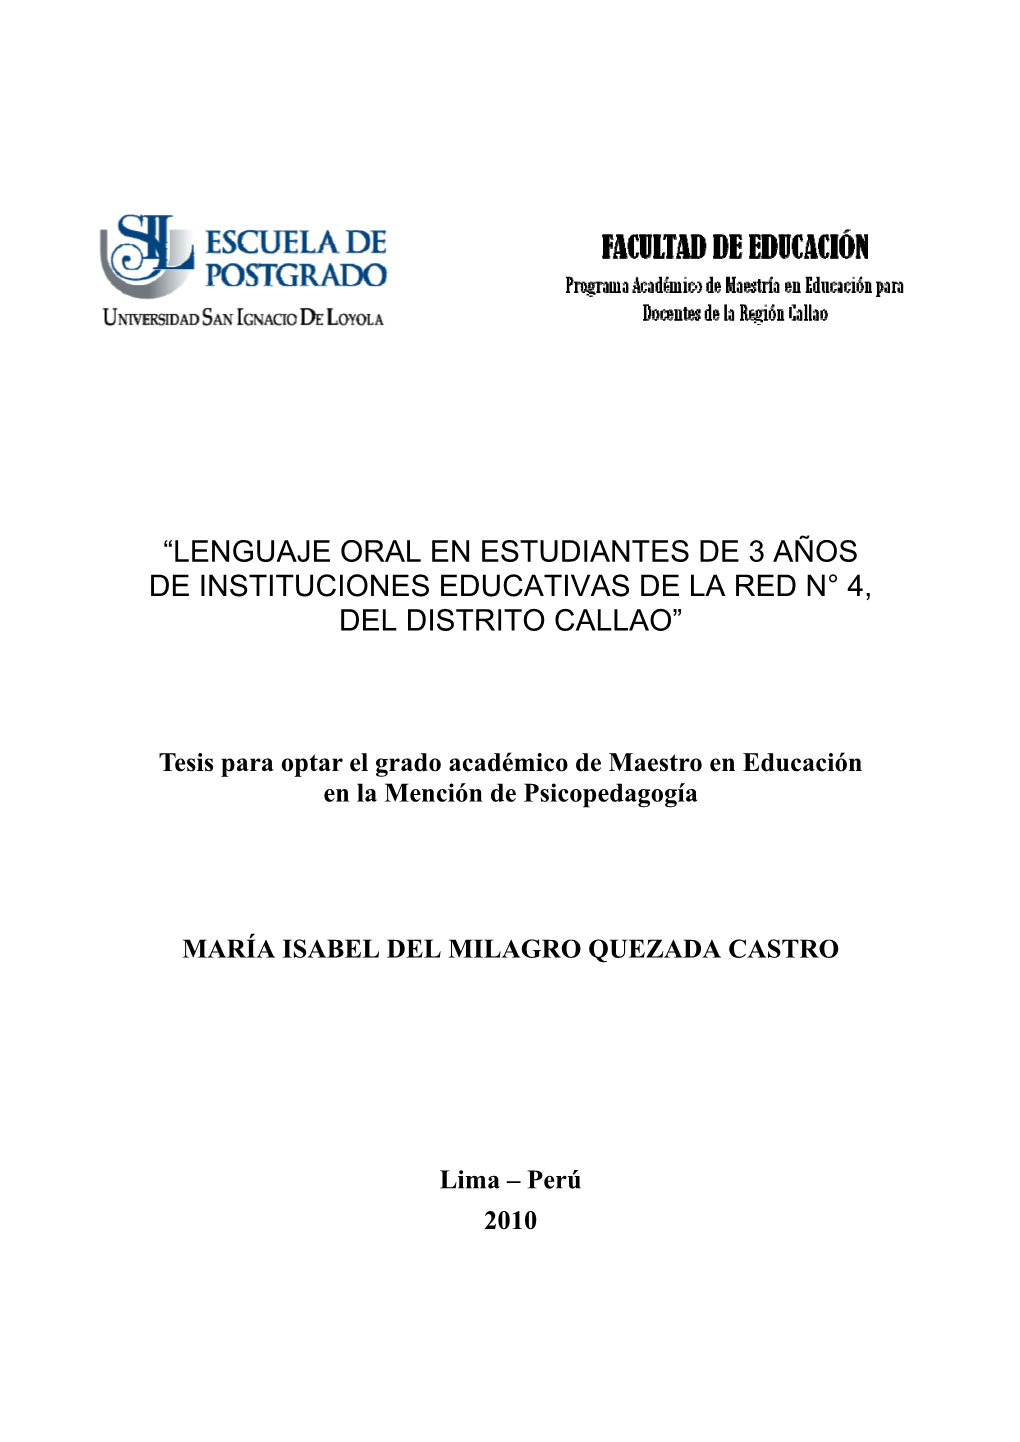 Lenguaje Oral En Estudiantes De 3 Años De Instituciones Educativas De La Red N° 4, Del Distrito Callao”